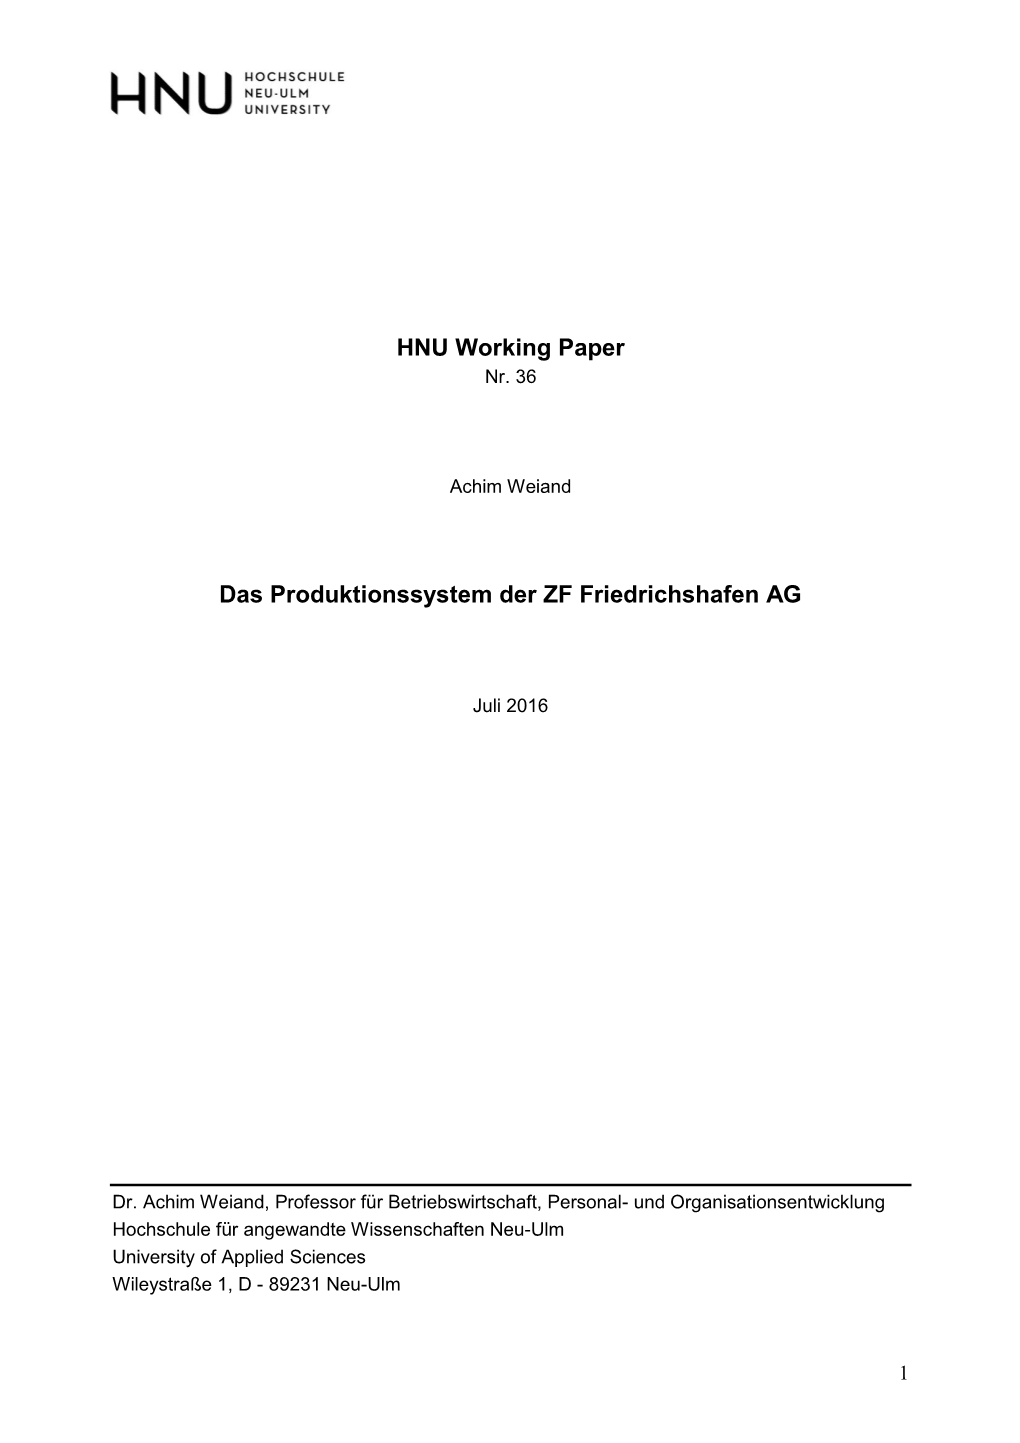 HNU Working Paper Das Produktionssystem Der ZF